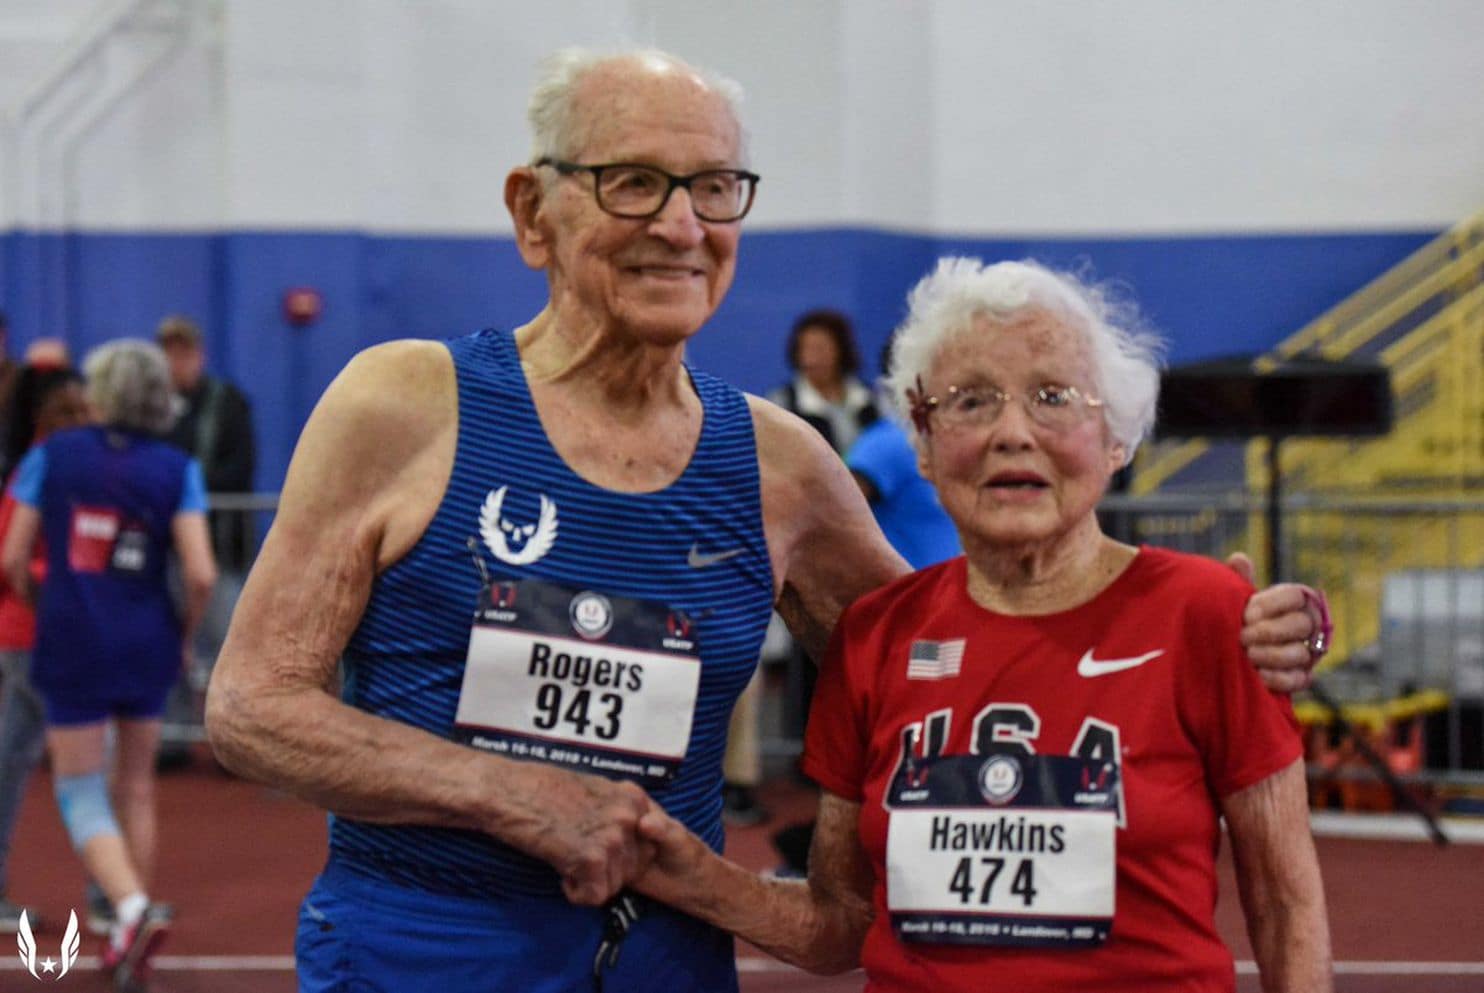 Cụ ông 100 tuổi Orville Rogers và cụ bà 102 tuổi Julia Hawkins